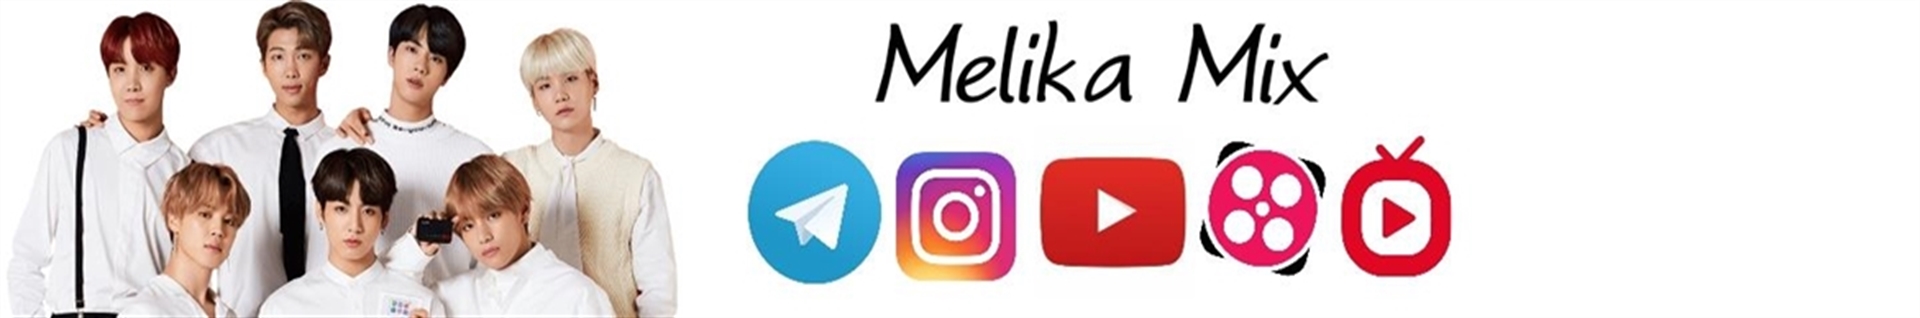 Melika Mix